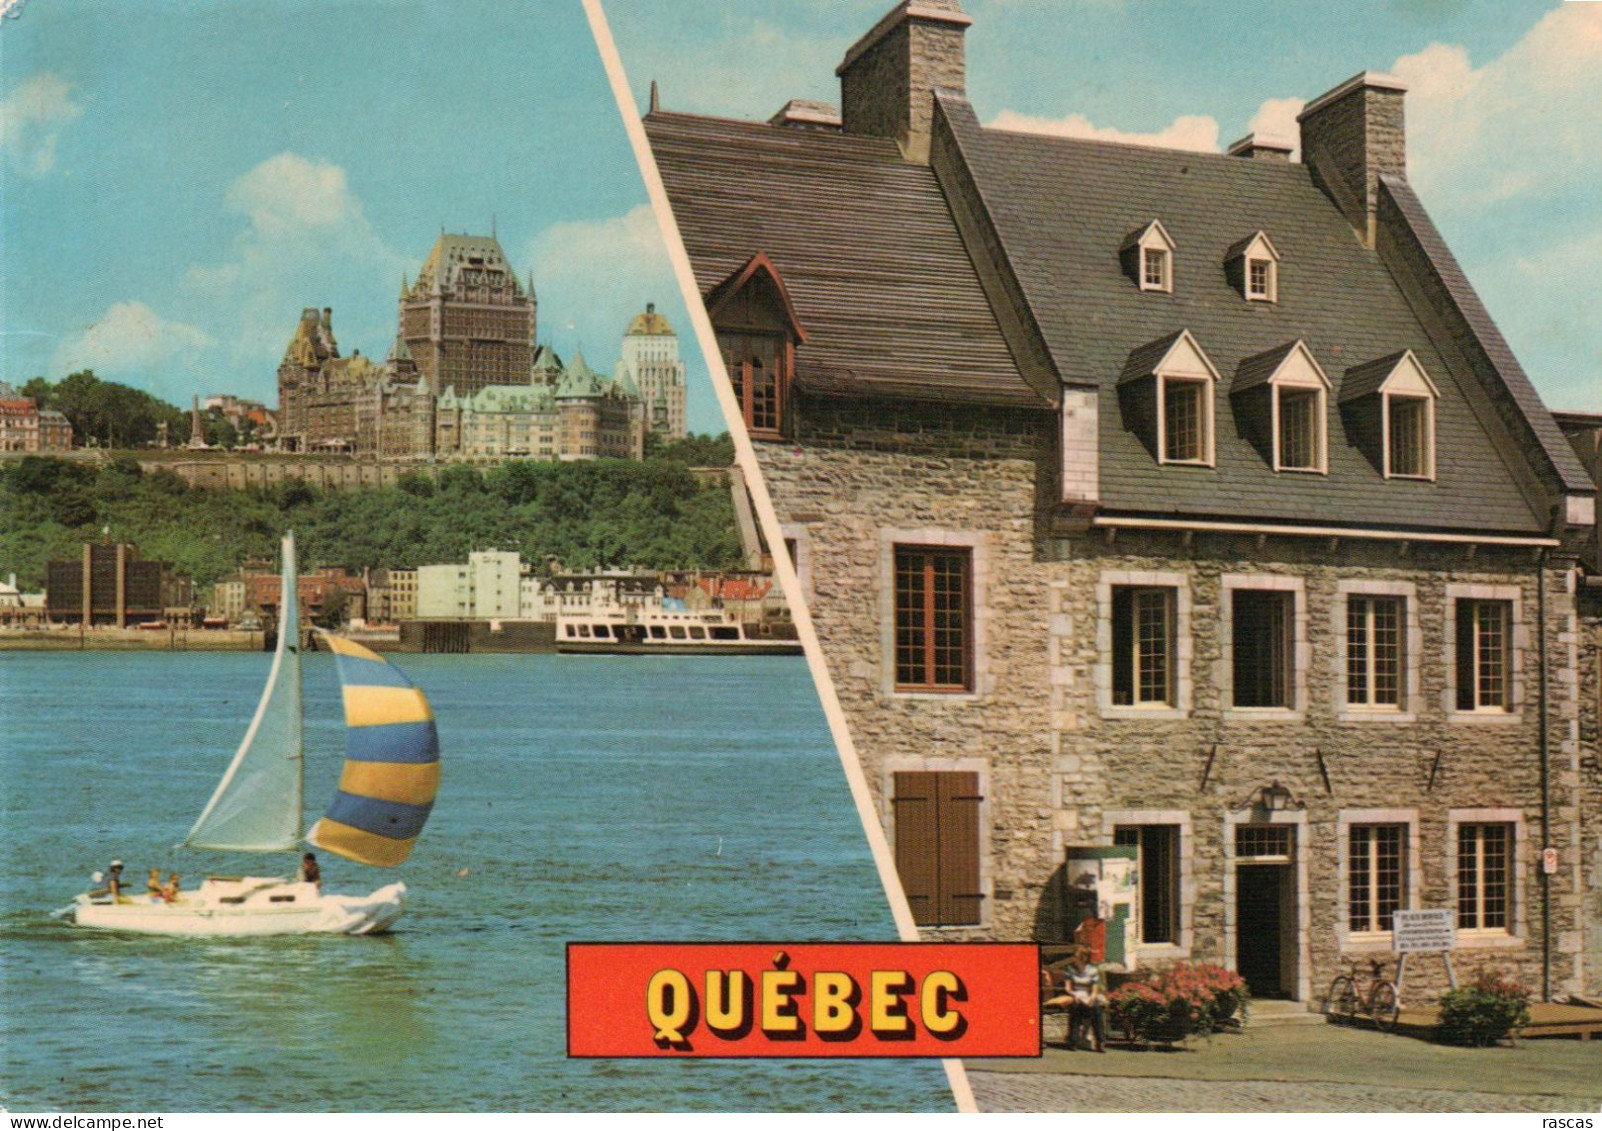 CPM - P - CANADA - QUEBEC - AGREABLE RANDONNEE SUR LE SAINT LAURENT - MAISON A VINS PLACE ROYALE - LE PICART - DUMOND - Québec - La Cité